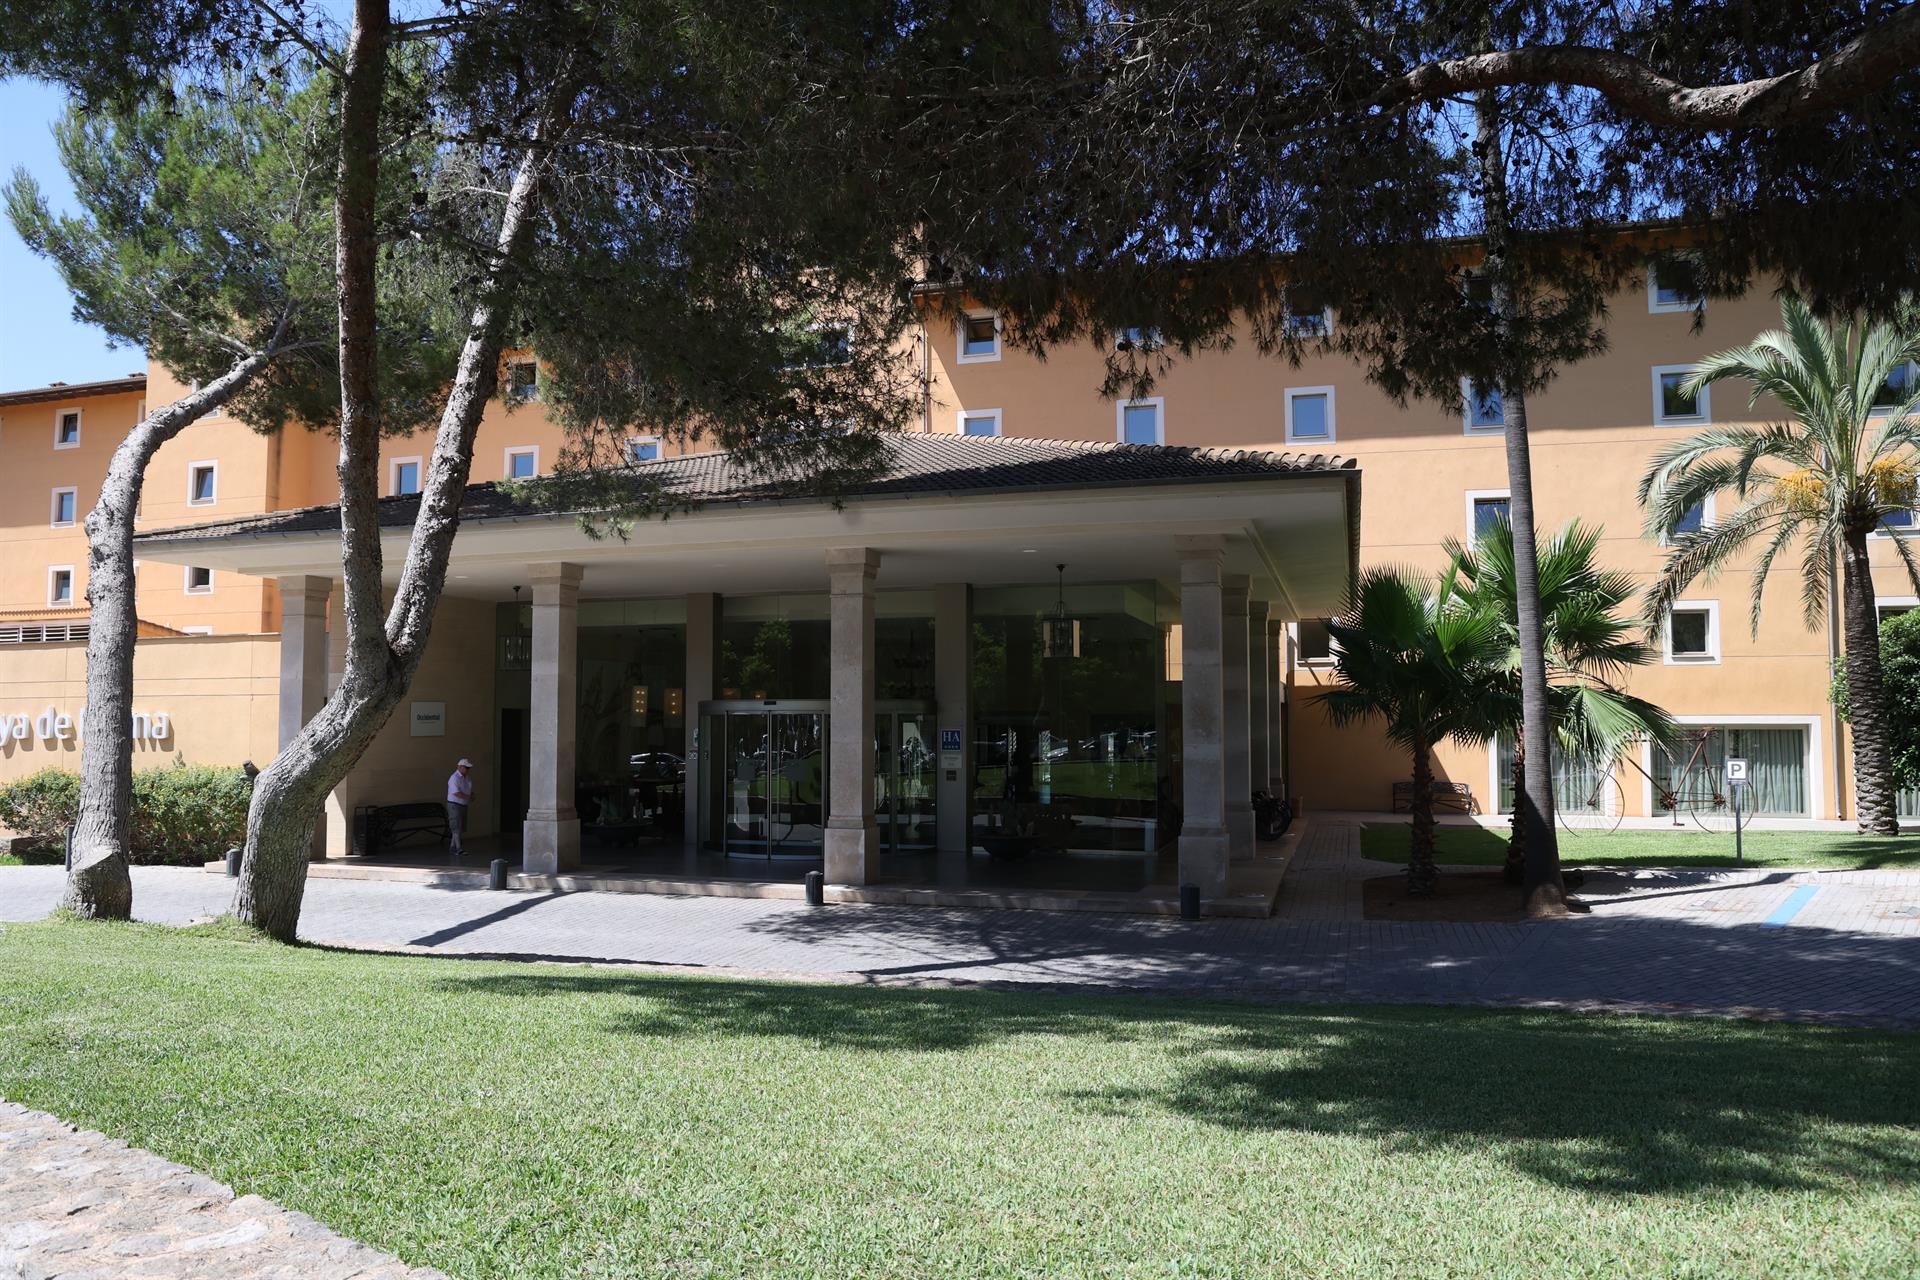 Fachada del hotel donde seis turistas presuntamente han violado a una joven, a 14 de julio de 2023, en Palma de Mallorca, Mallorca, Baleares (España). - Isaac Buj - Europa Press